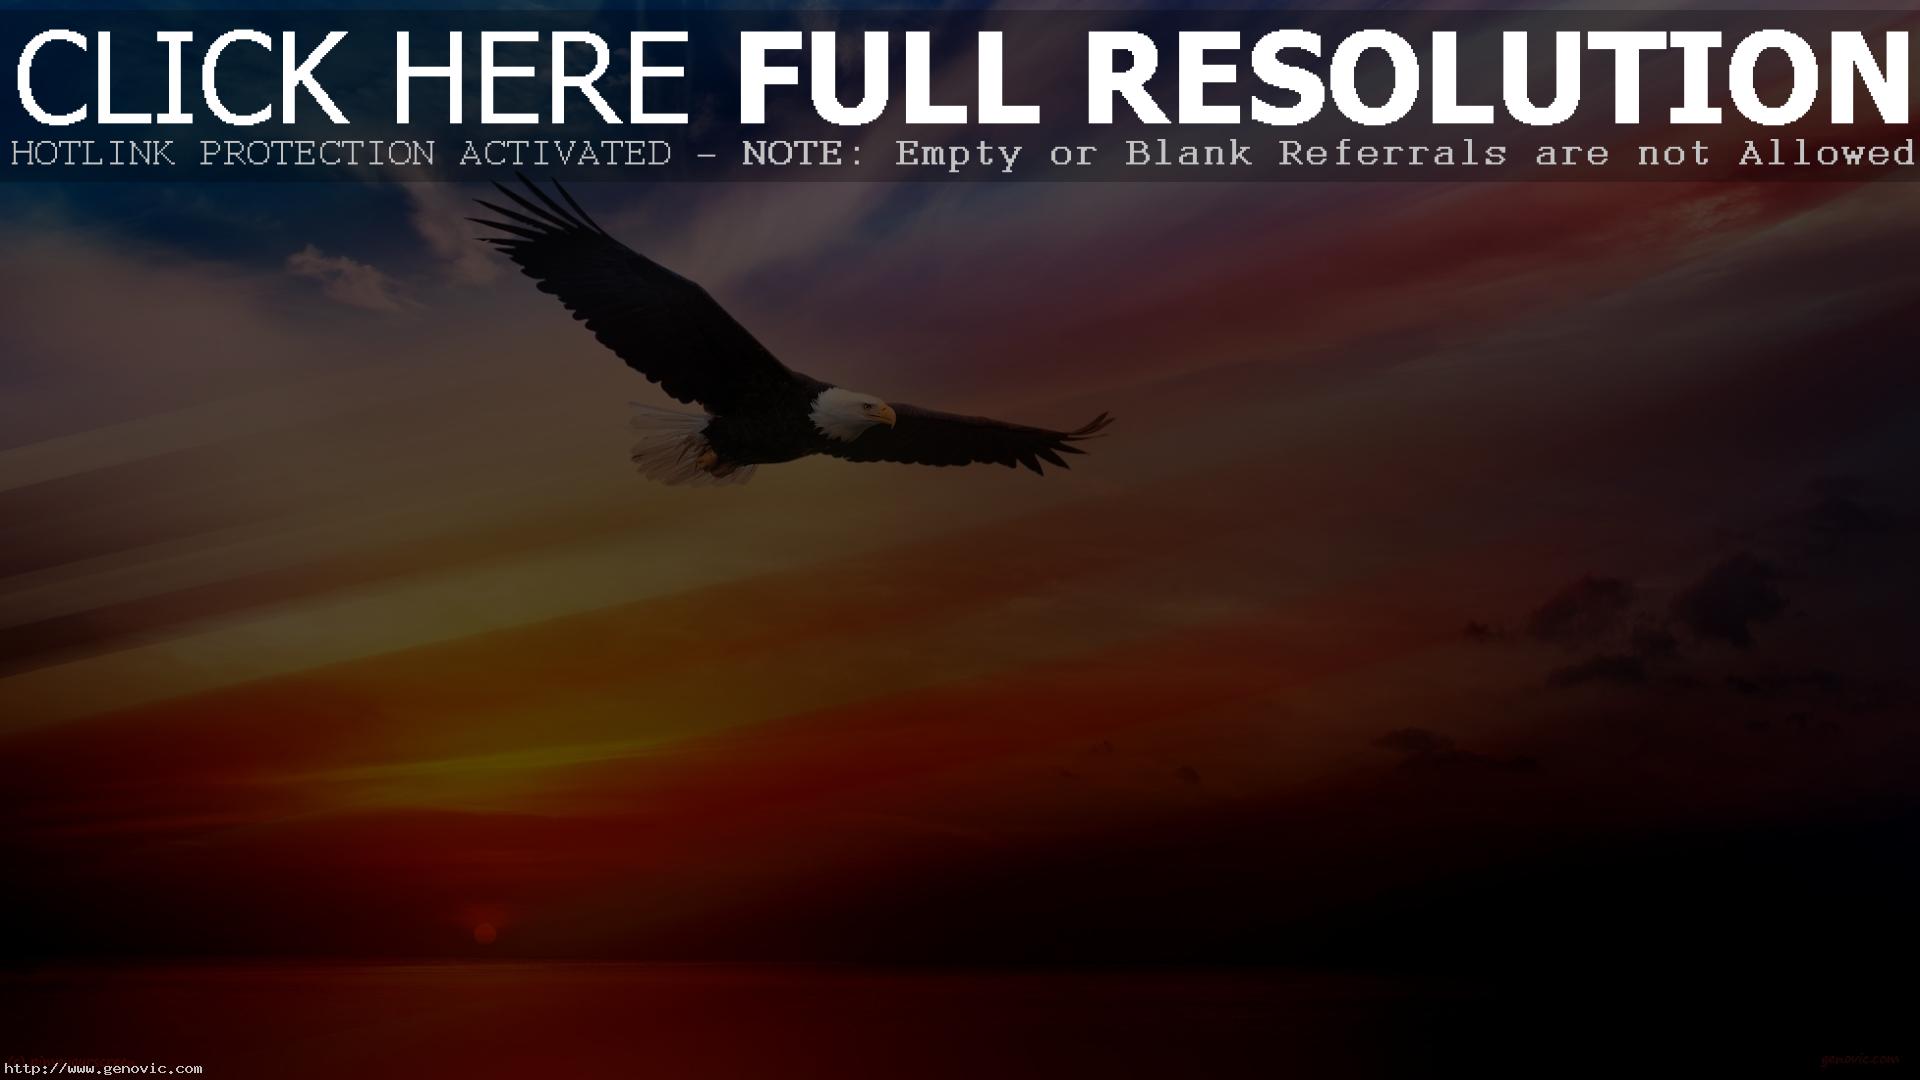 Flying Bald Eagle Wallpaper Hd 1080p Free For Desktop - Warren Street Tube Station - HD Wallpaper 